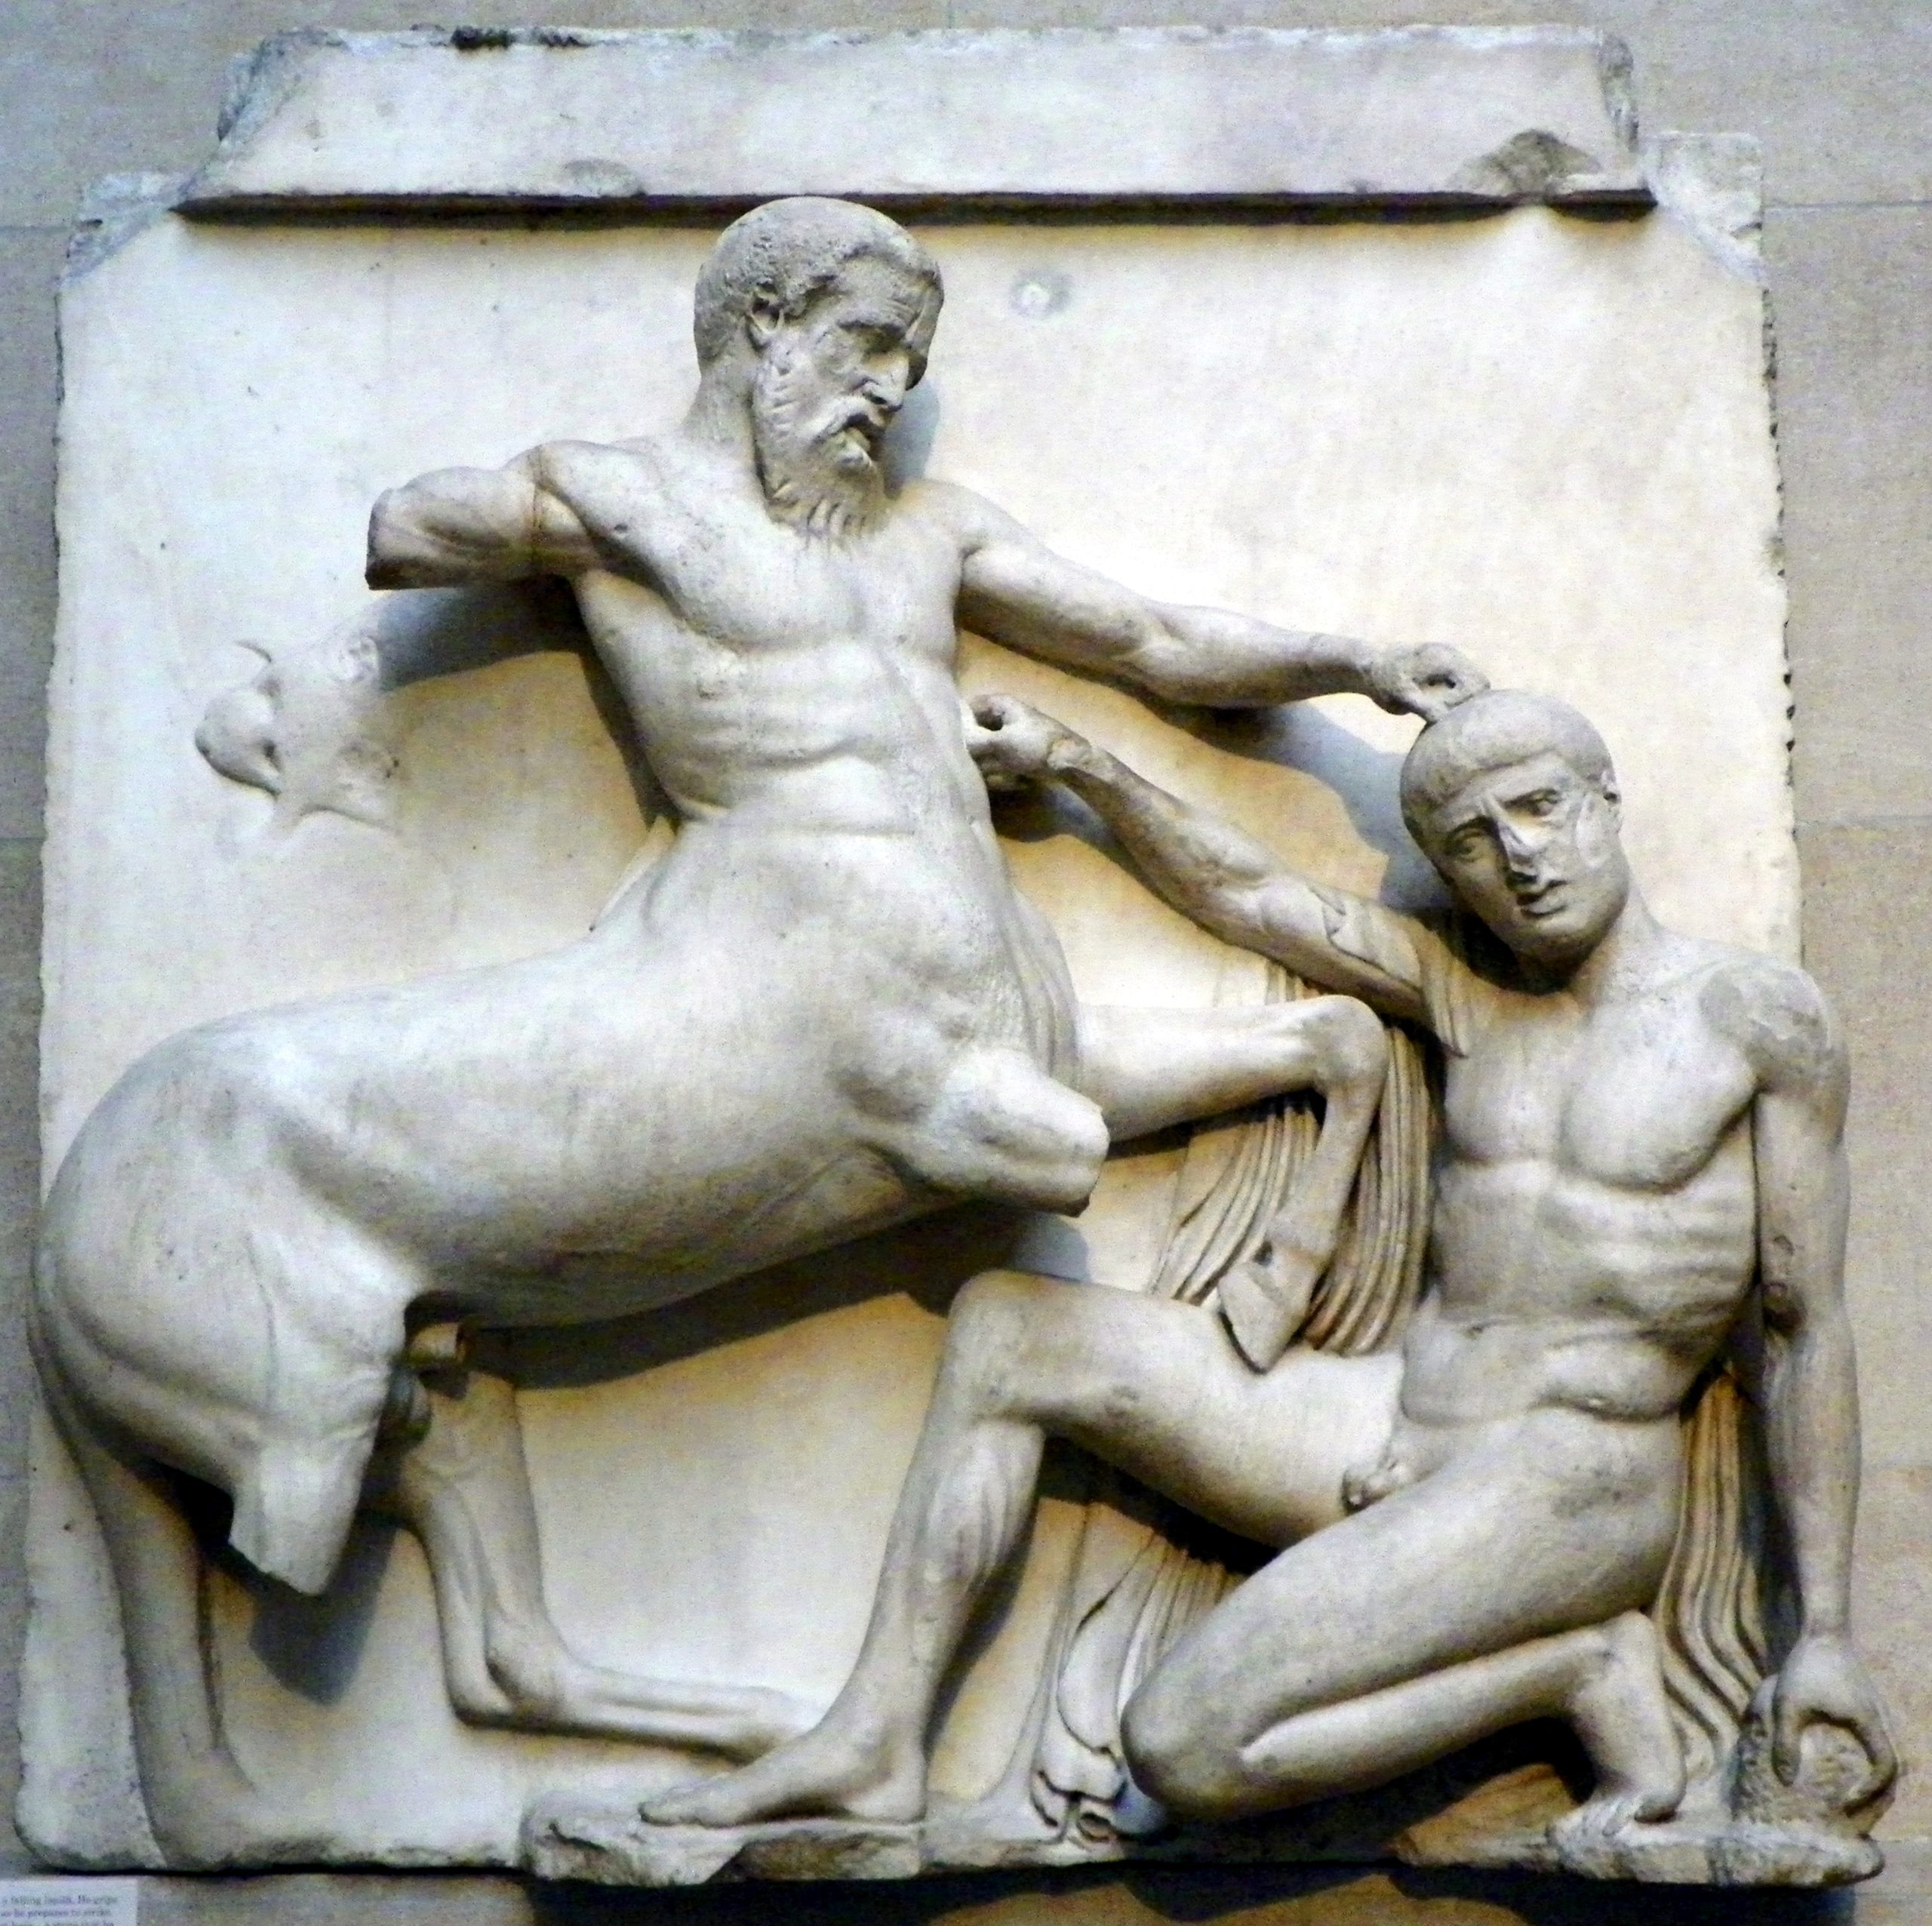 A sculpture detailing a fight between a centaur and a man.